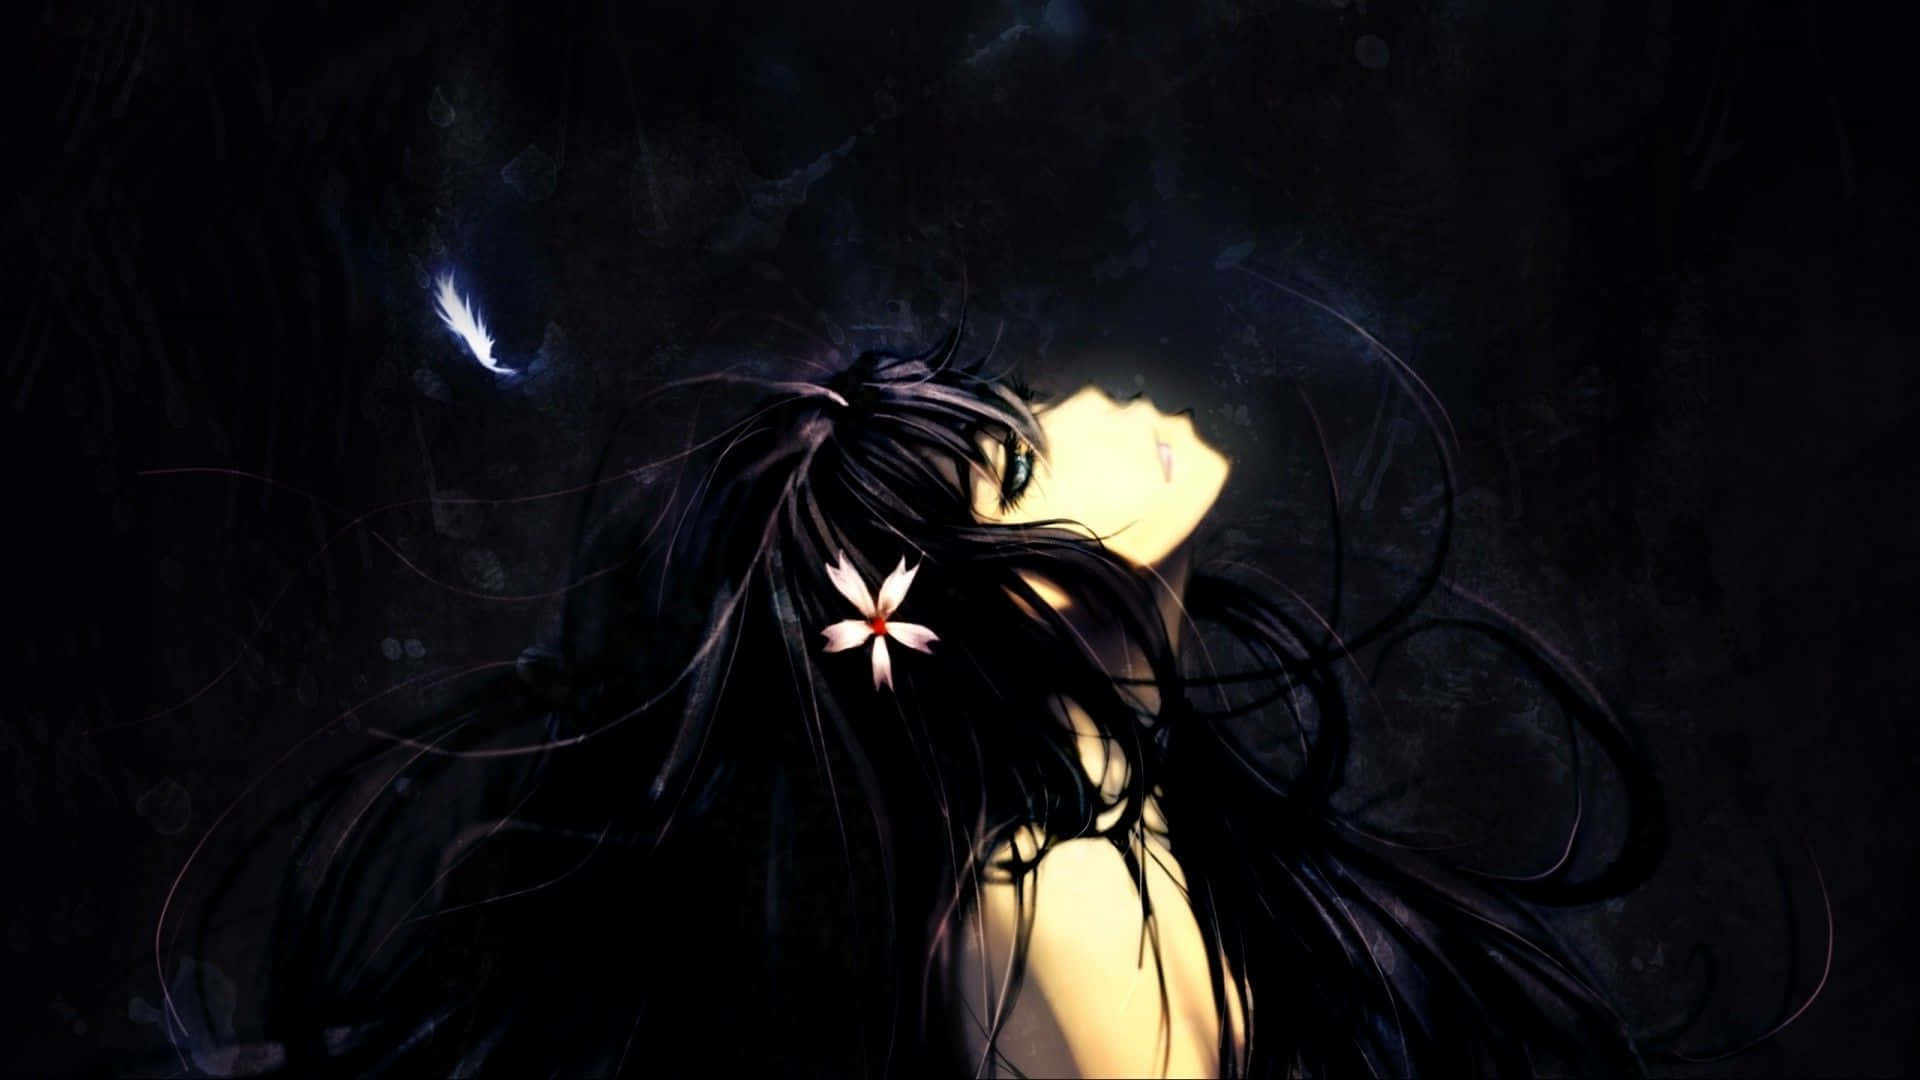 Long -haired Dark Aesthetic Anime Girl Wallpaper